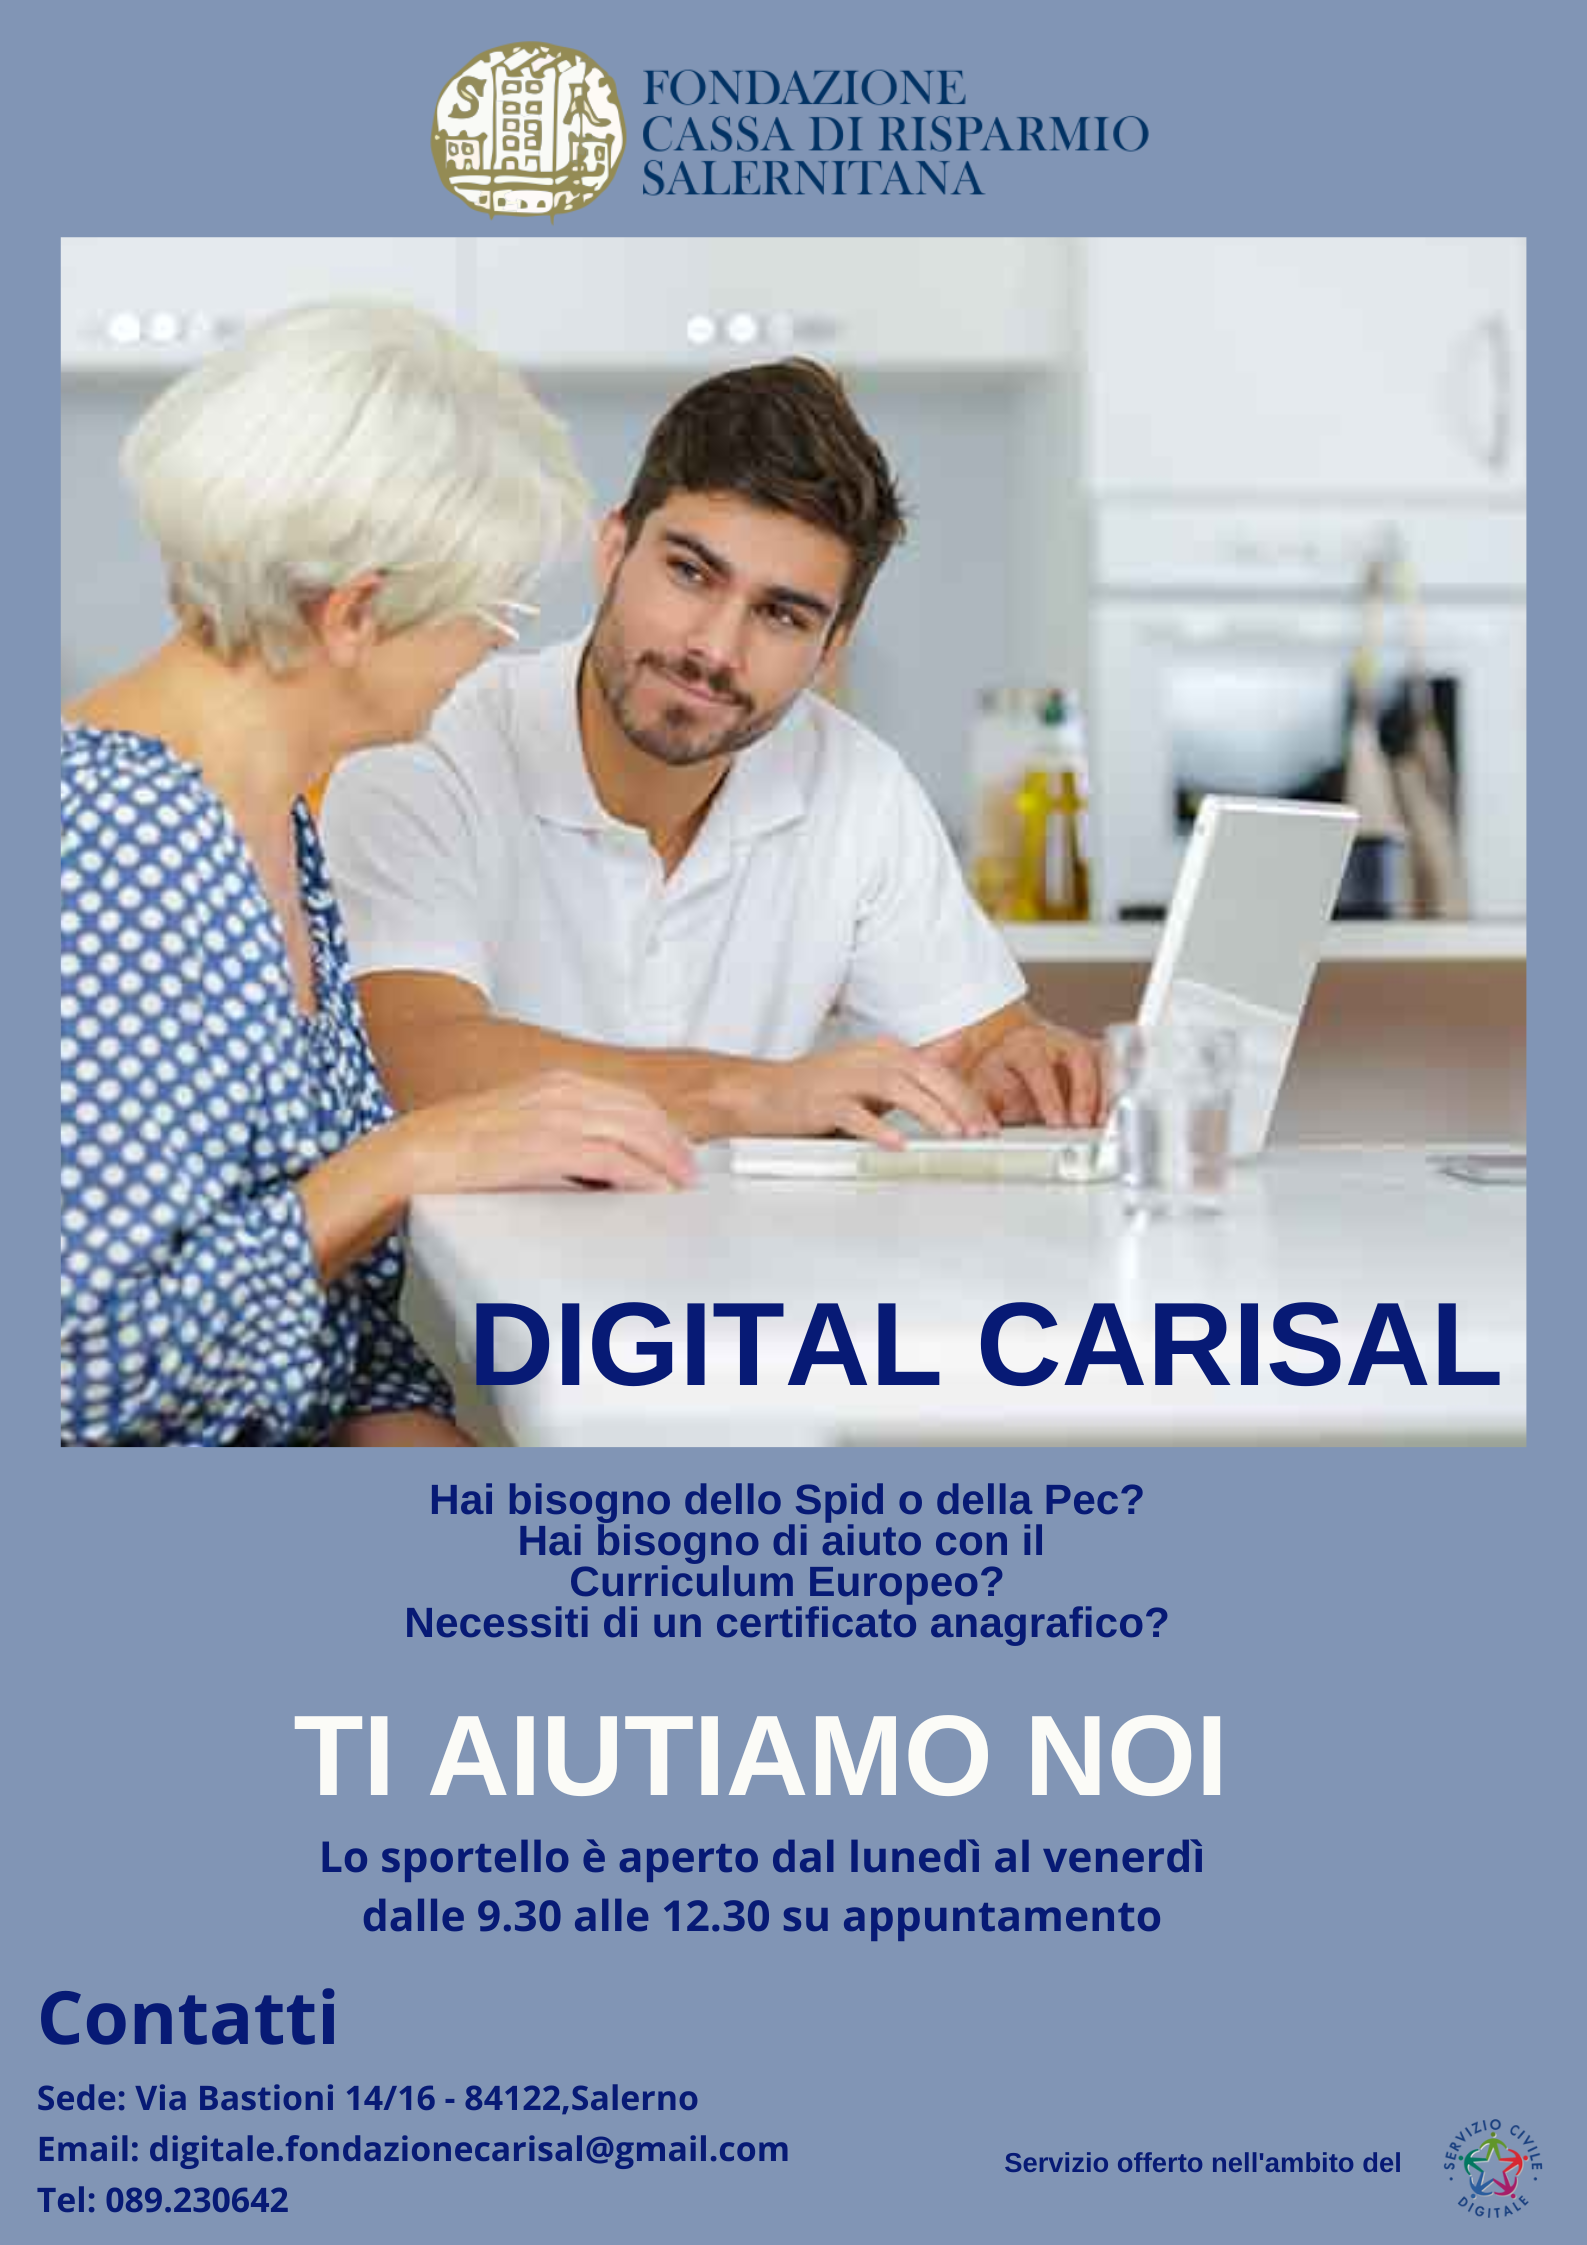 Salerno: Carisal, al via Sportello per servizi digitali